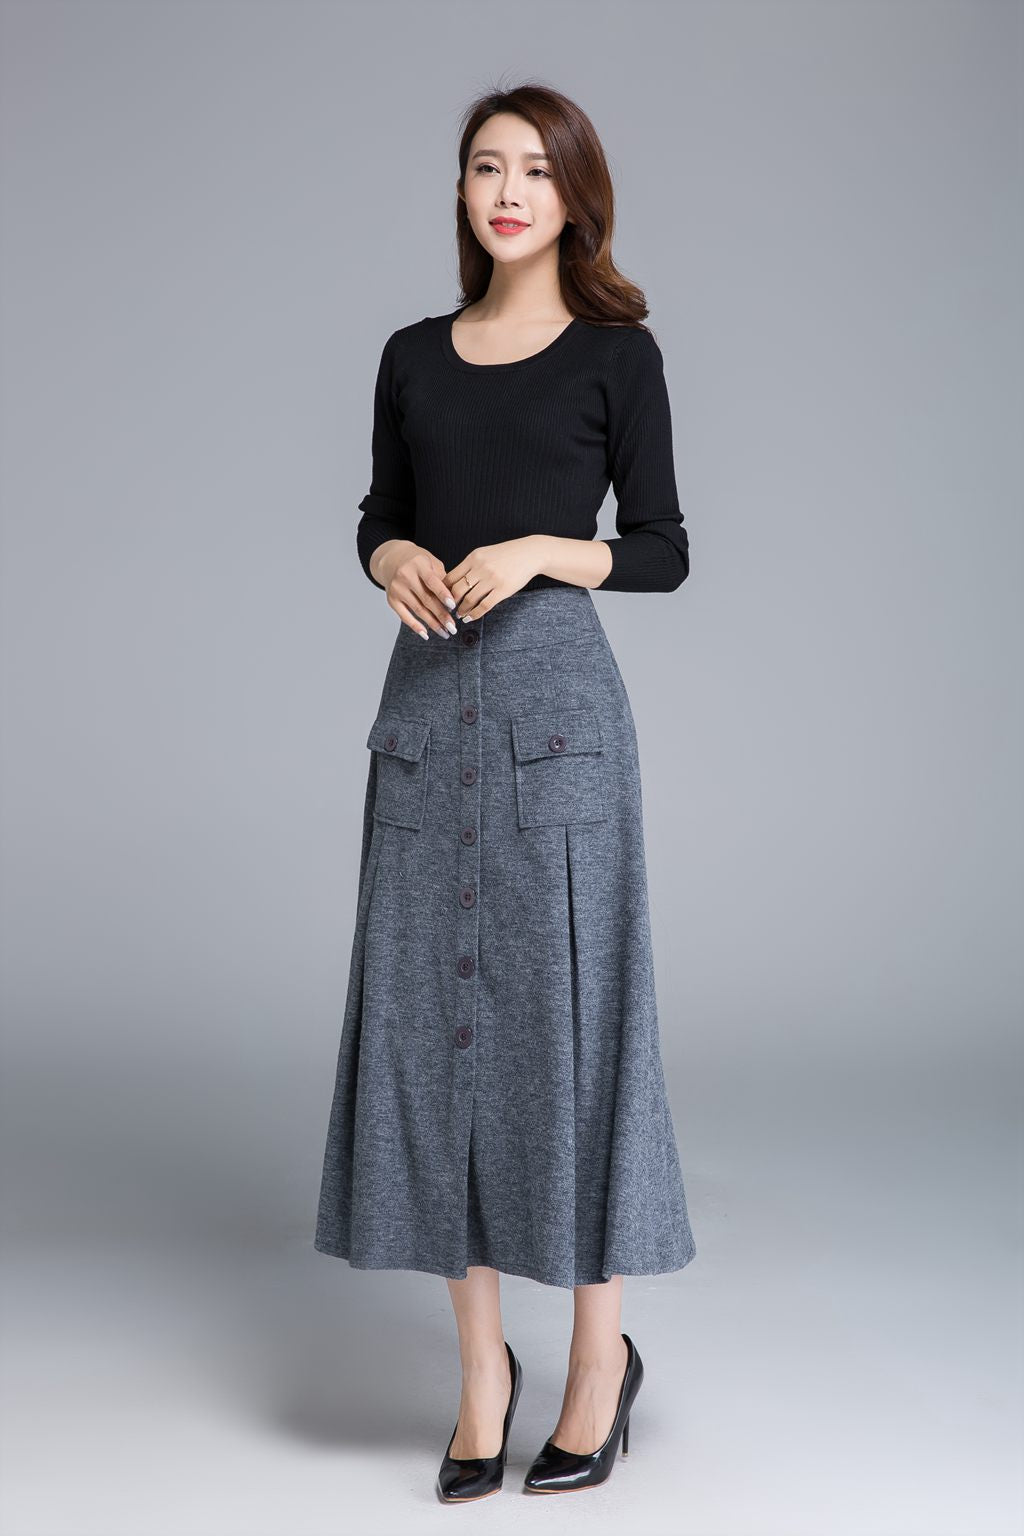 grey skirt, wool skirt, button skirt, midi skirt 1676 – XiaoLizi